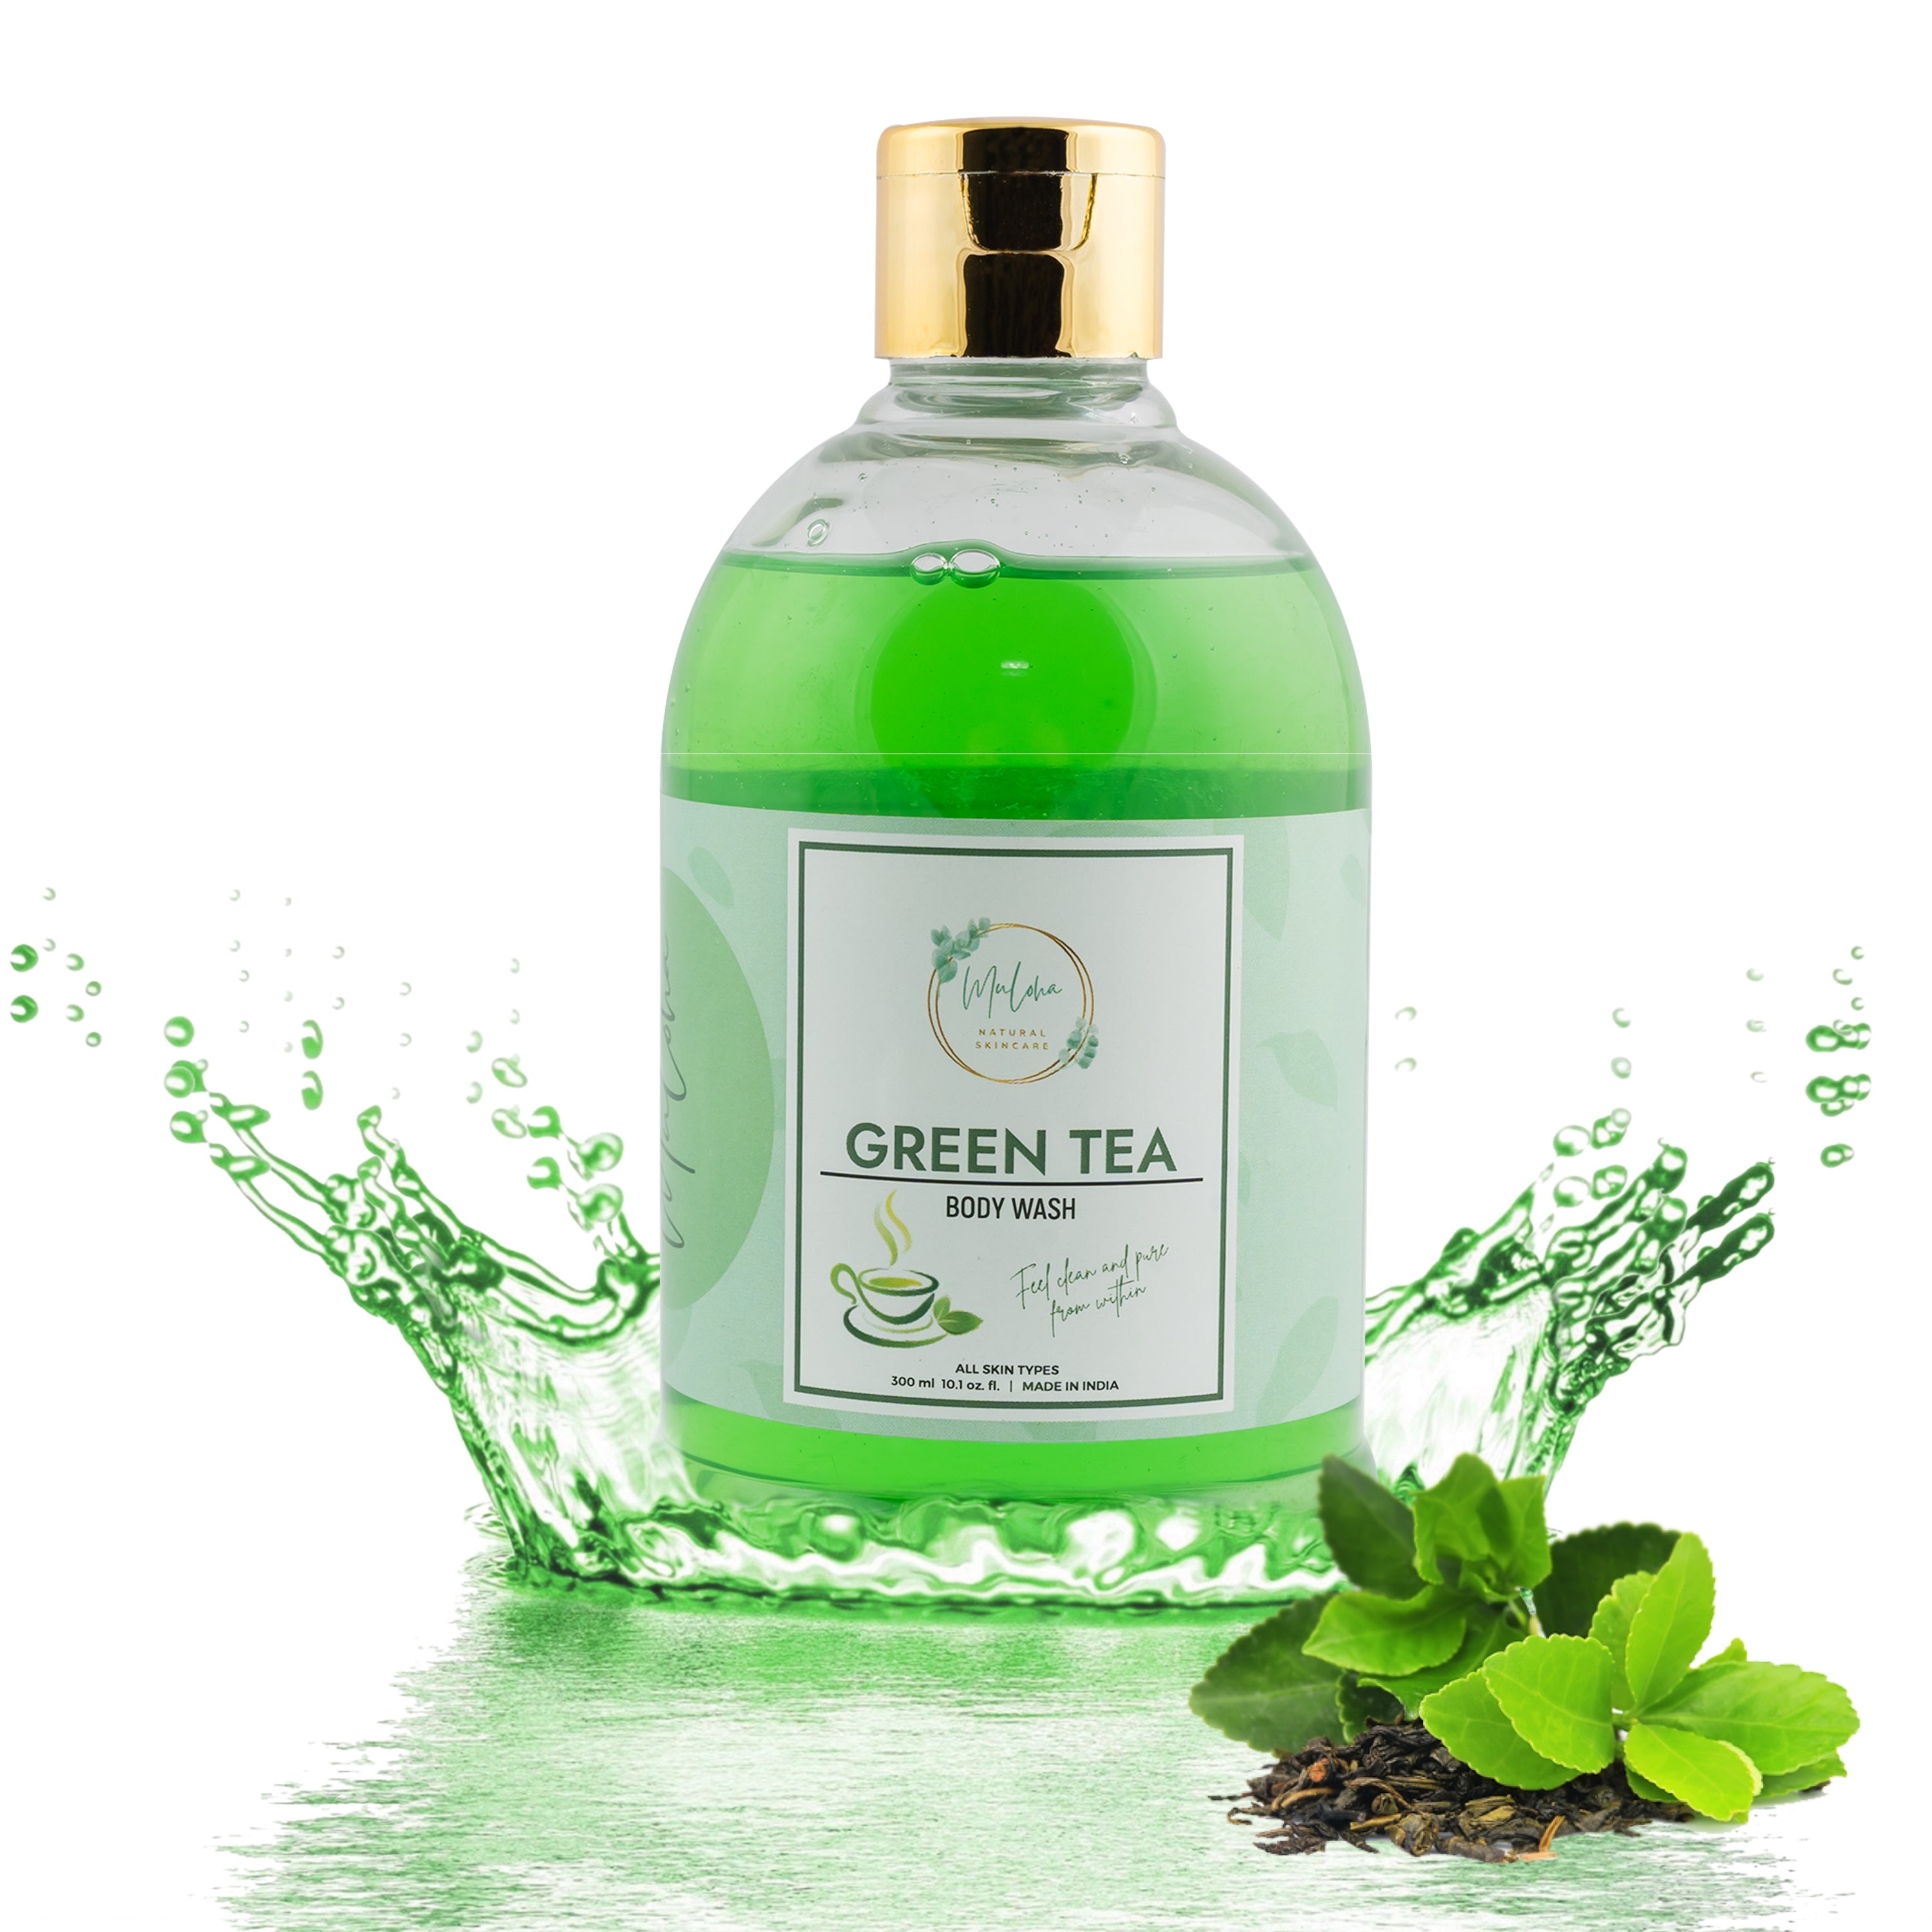 Muloha Green Tea Body Wash